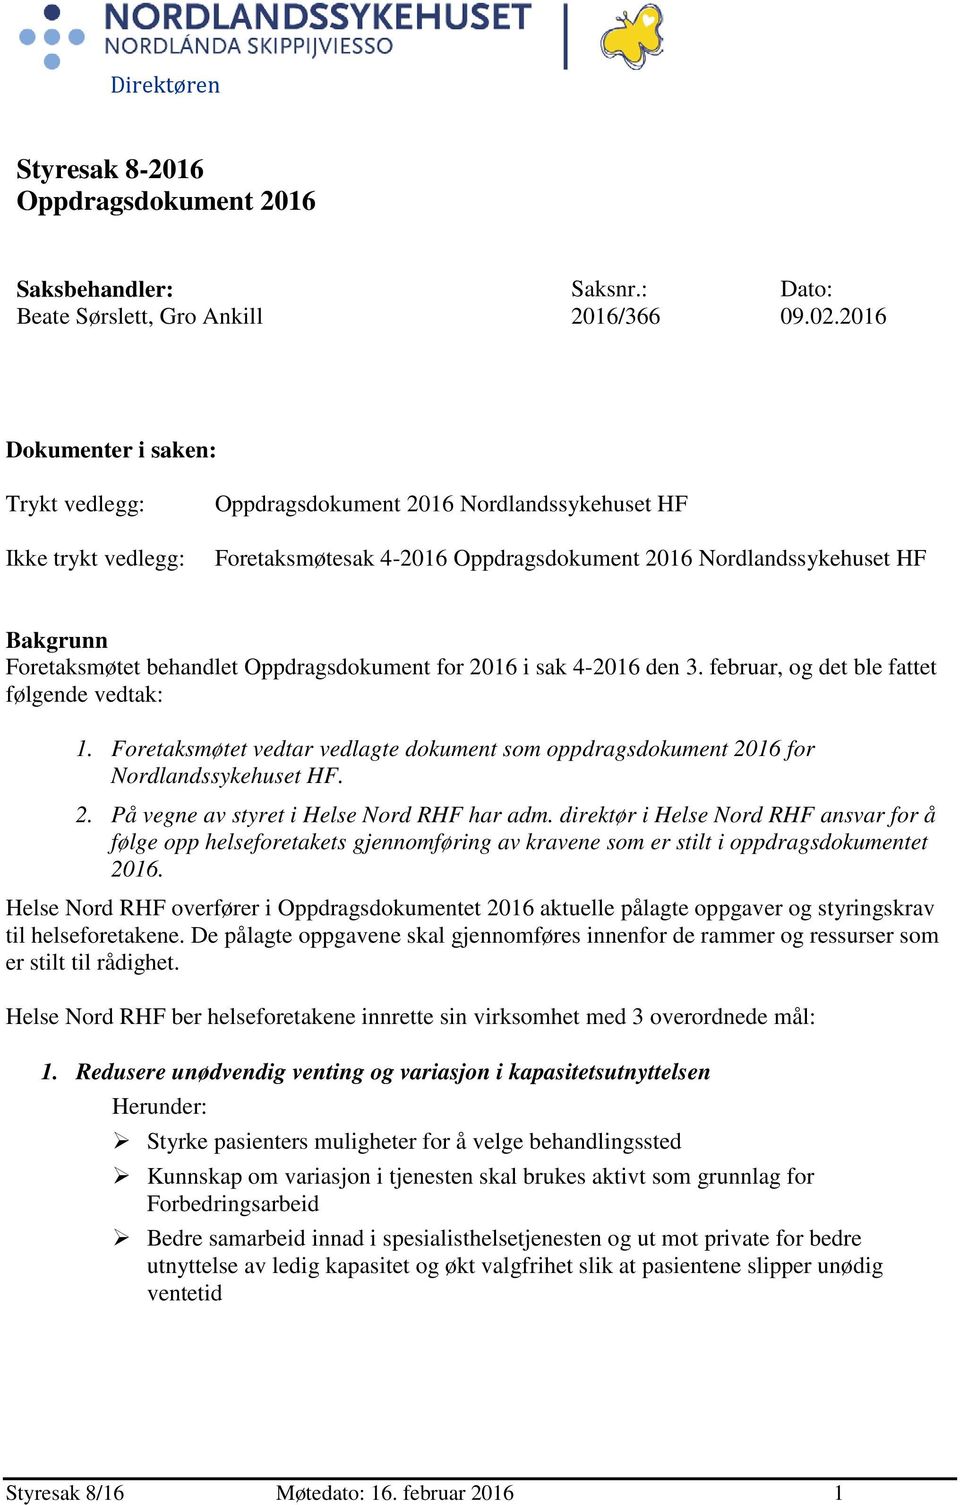 behandlet Oppdragsdokument for 2016 i sak 4-2016 den 3. februar, og det ble fattet følgende vedtak: 1. Foretaksmøtet vedtar vedlagte dokument som oppdragsdokument 2016 for Nordlandssykehuset HF. 2. På vegne av styret i Helse Nord RHF har adm.